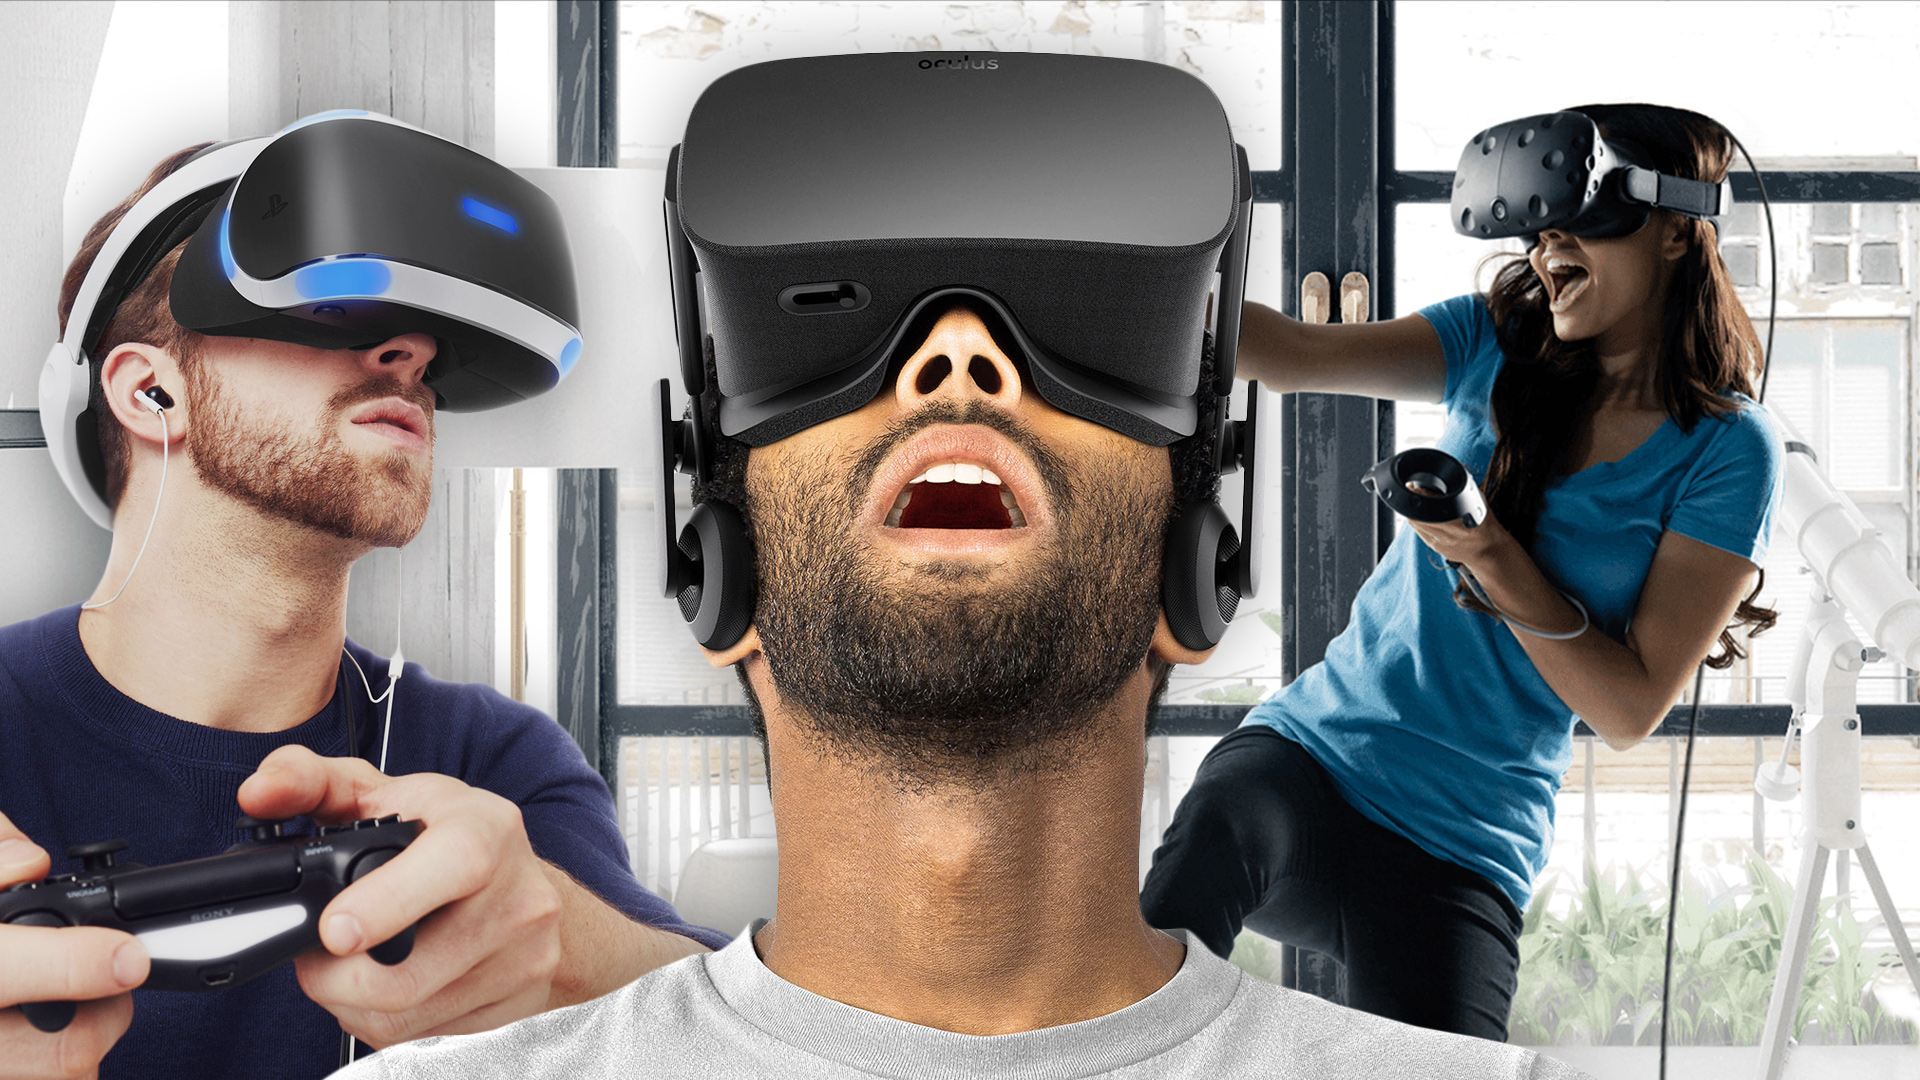 Madison vr. HTC Vive Steam. VR Headset 90s. Погружение в виртуальную реальность. Аттракцион виртуальной реальности.